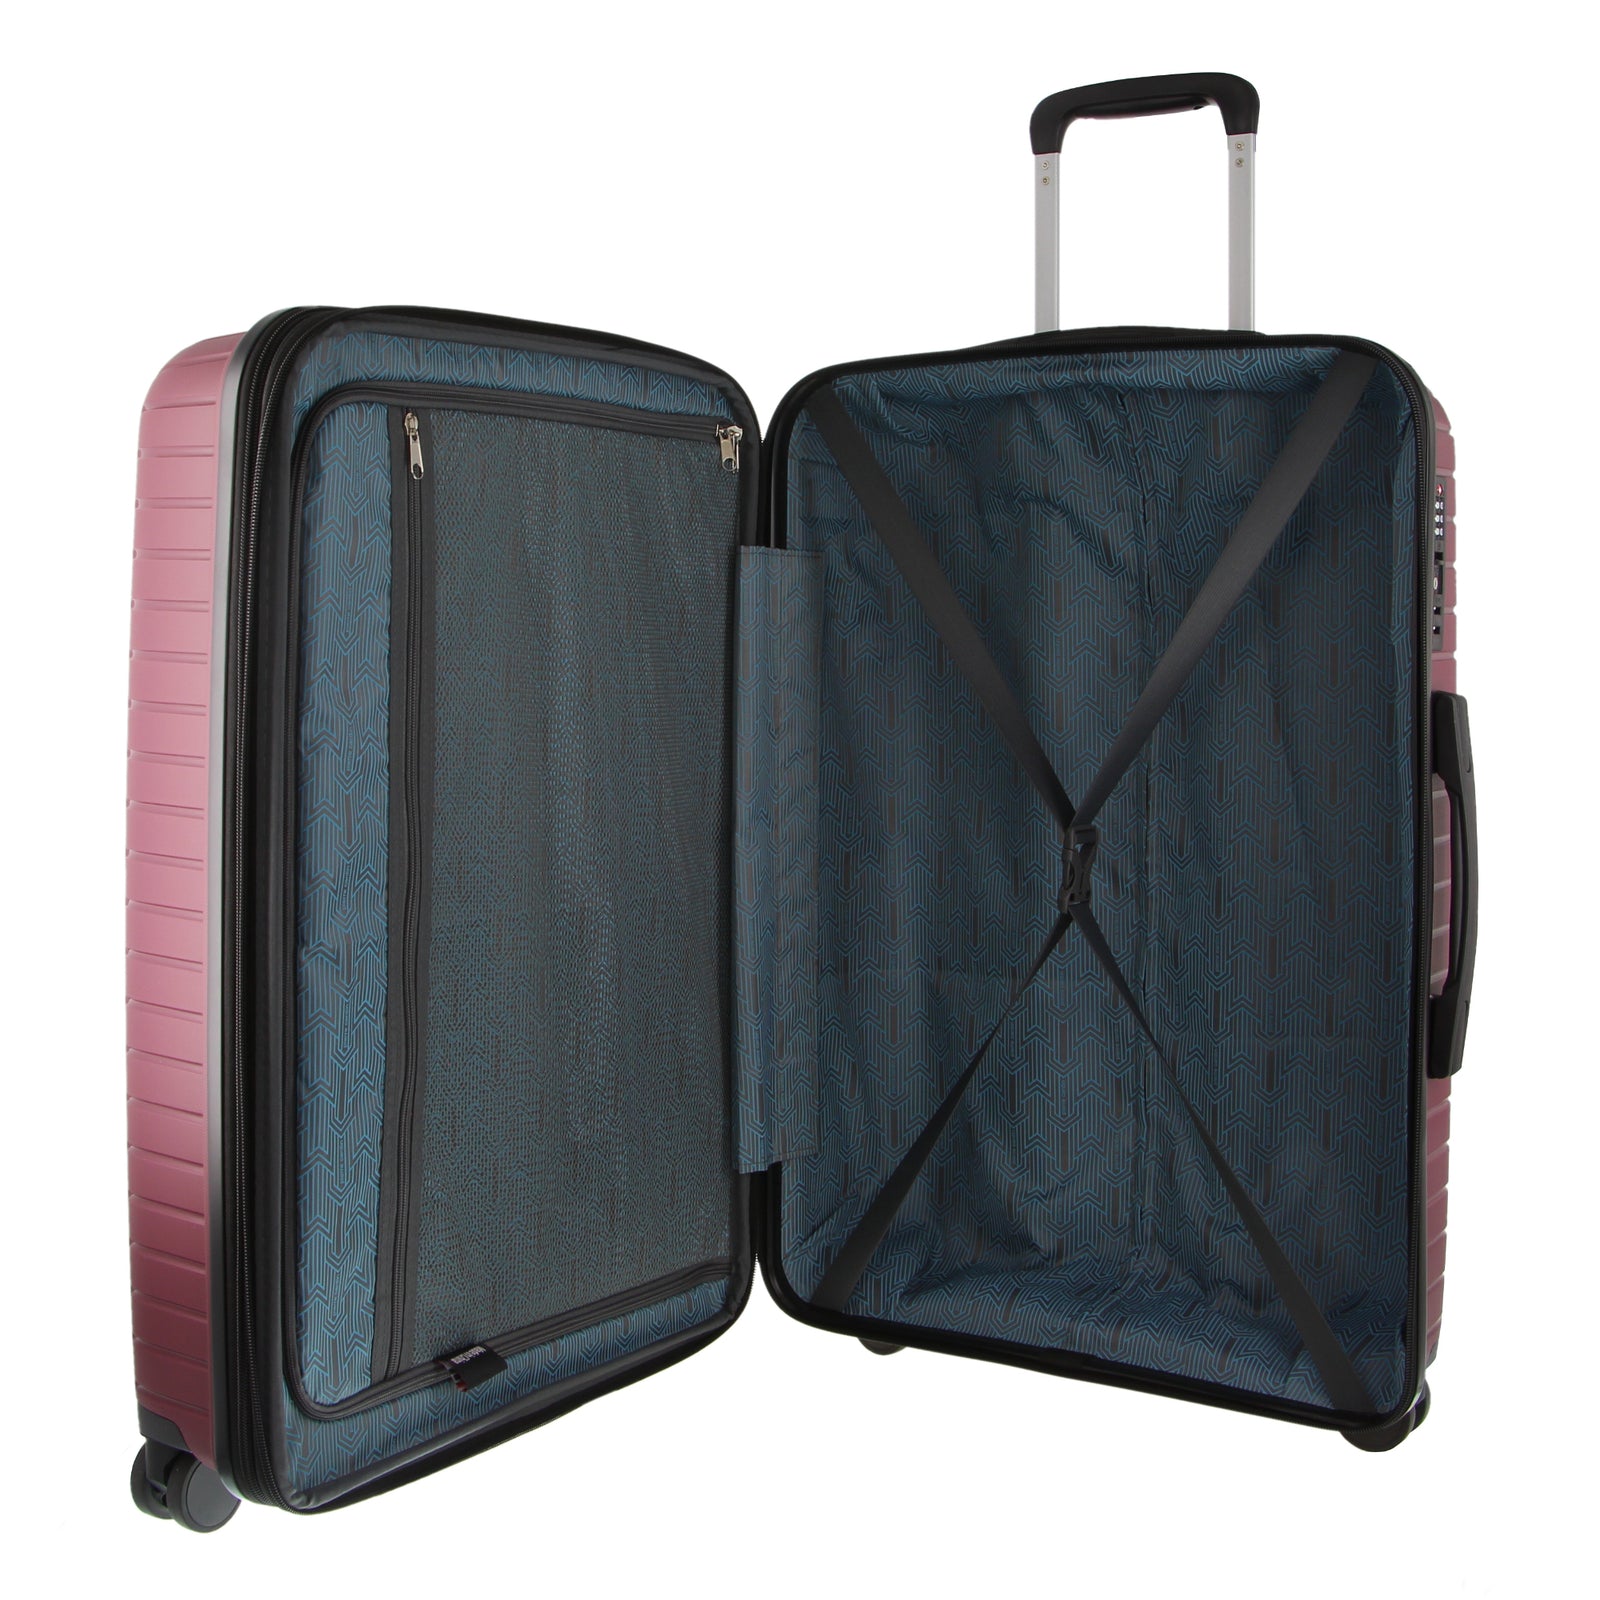 76cm Large Hard-Shell Suitcase Travel Luggage Bag - Burgundy